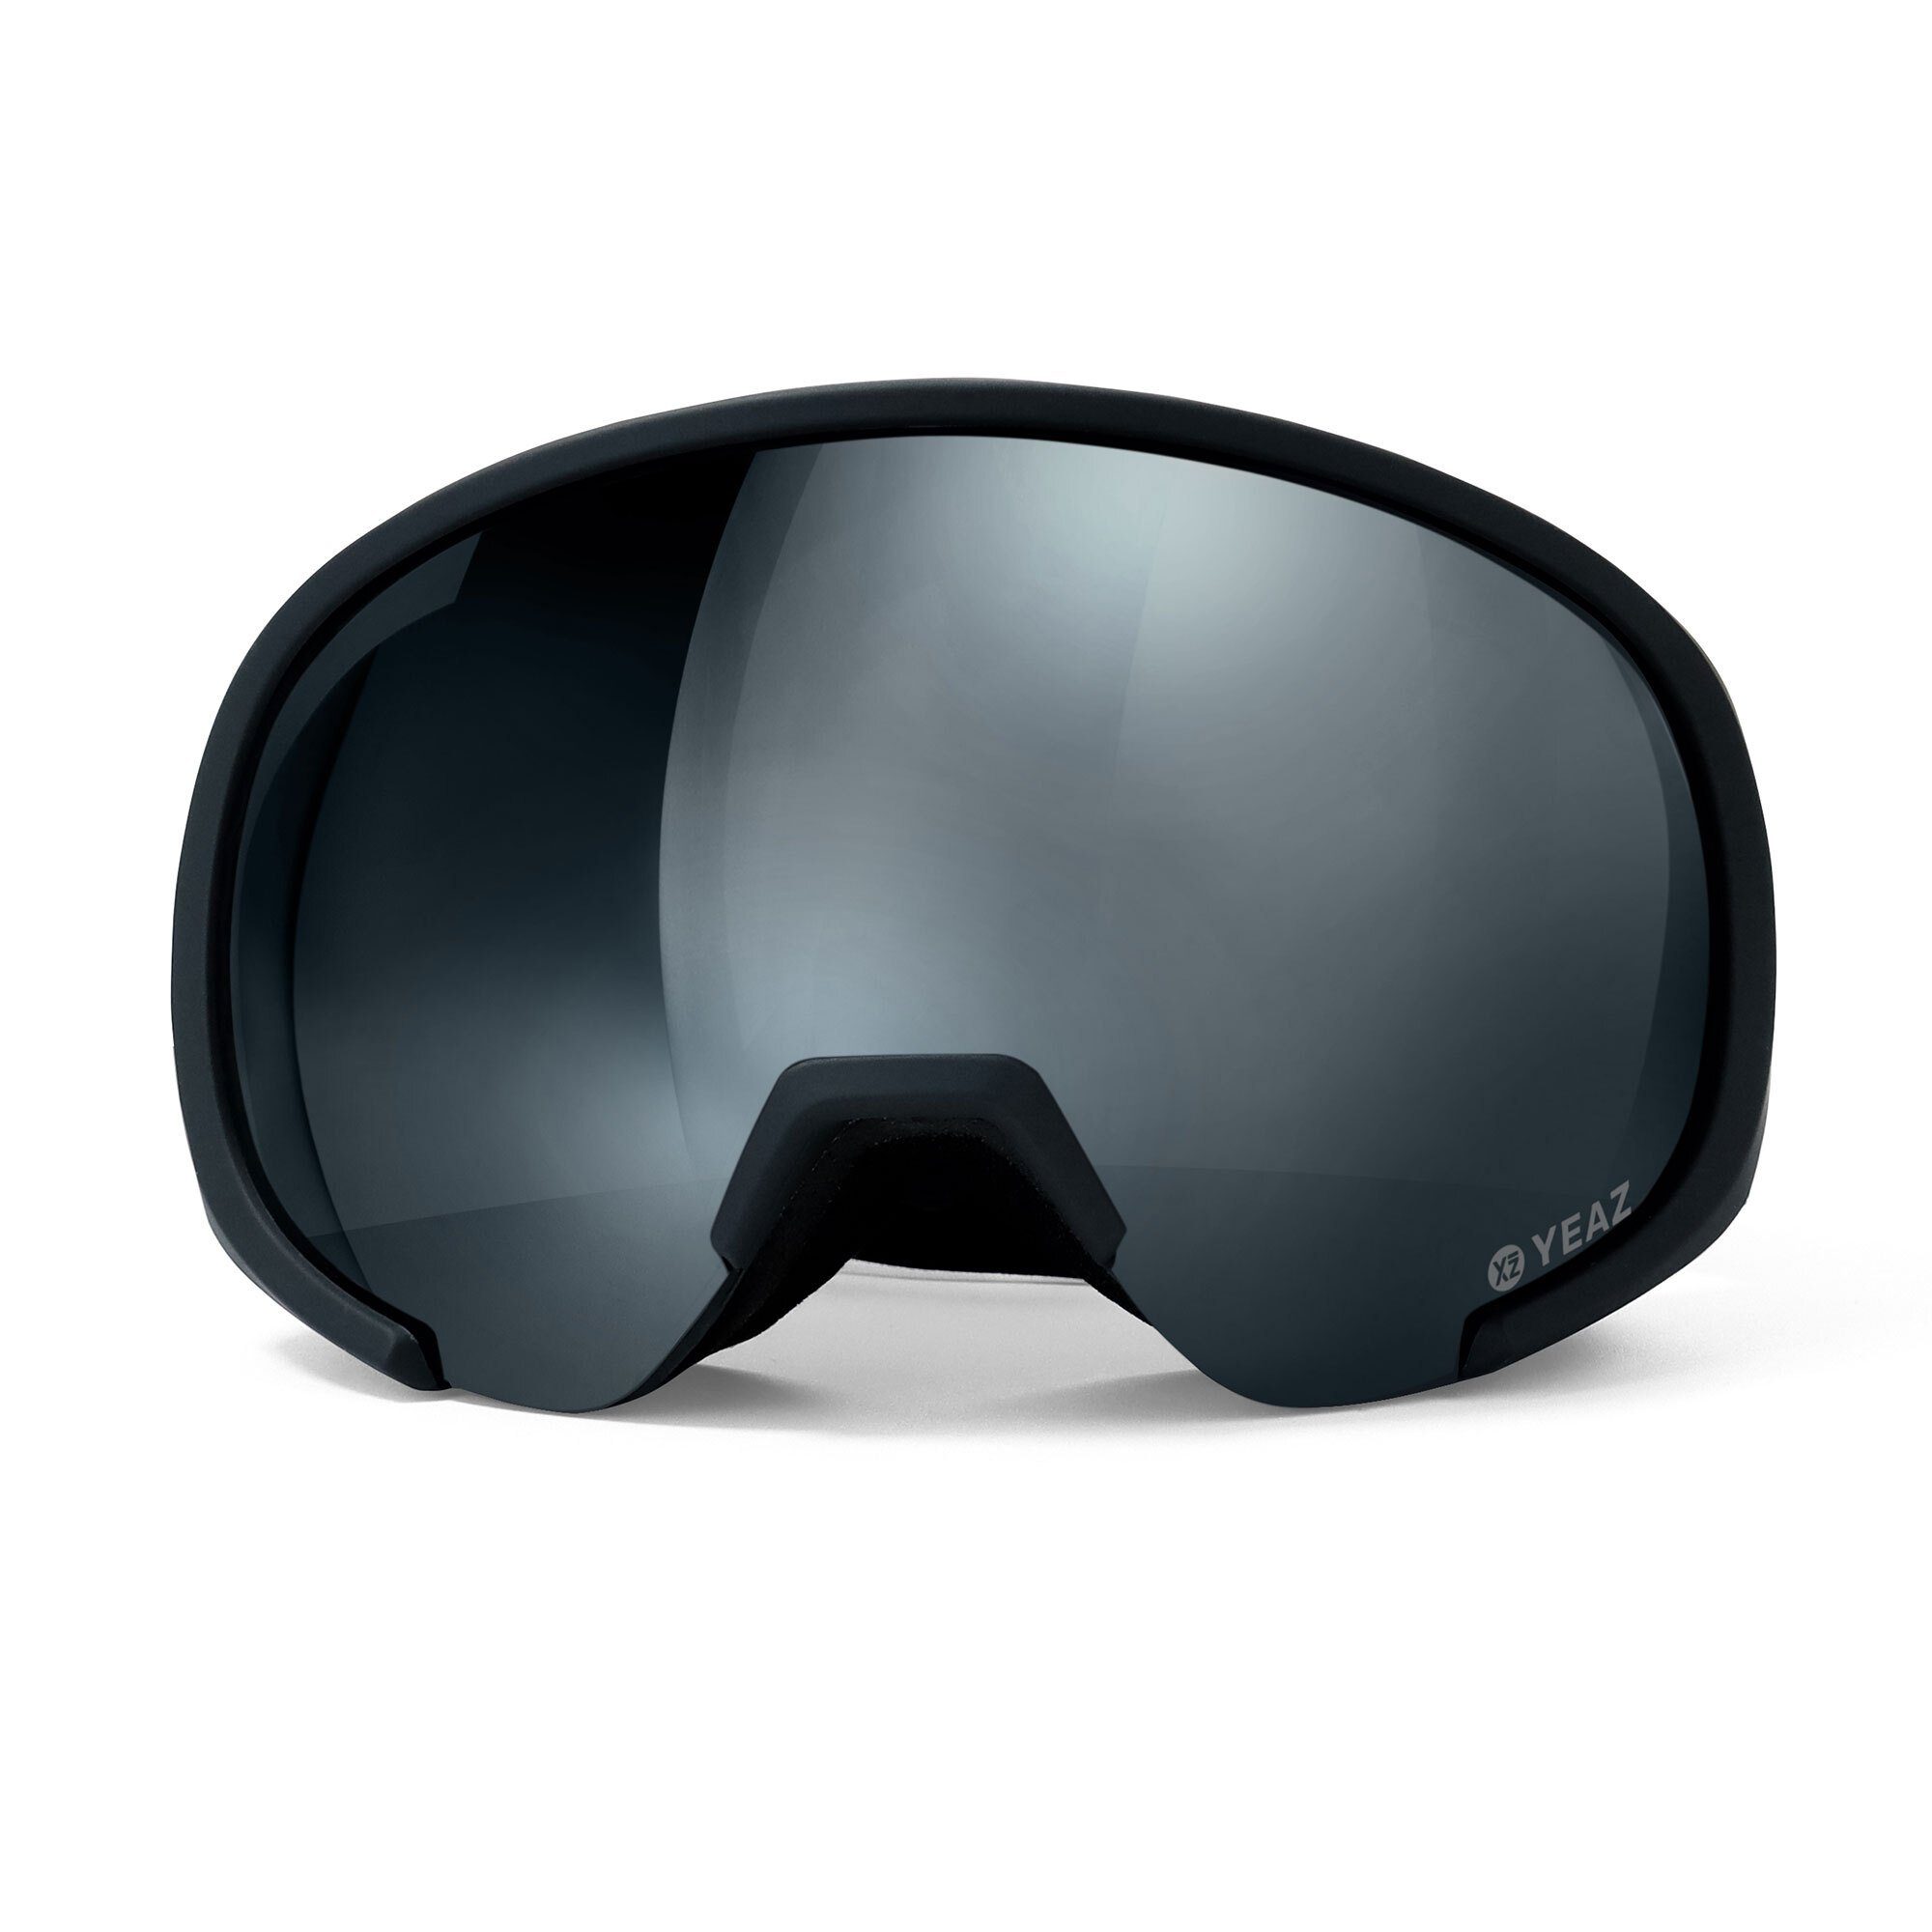 YEAZ Skibrille BLACK RUN, Premium-Ski- und und Snowboardbrille für Erwachsene Jugendliche